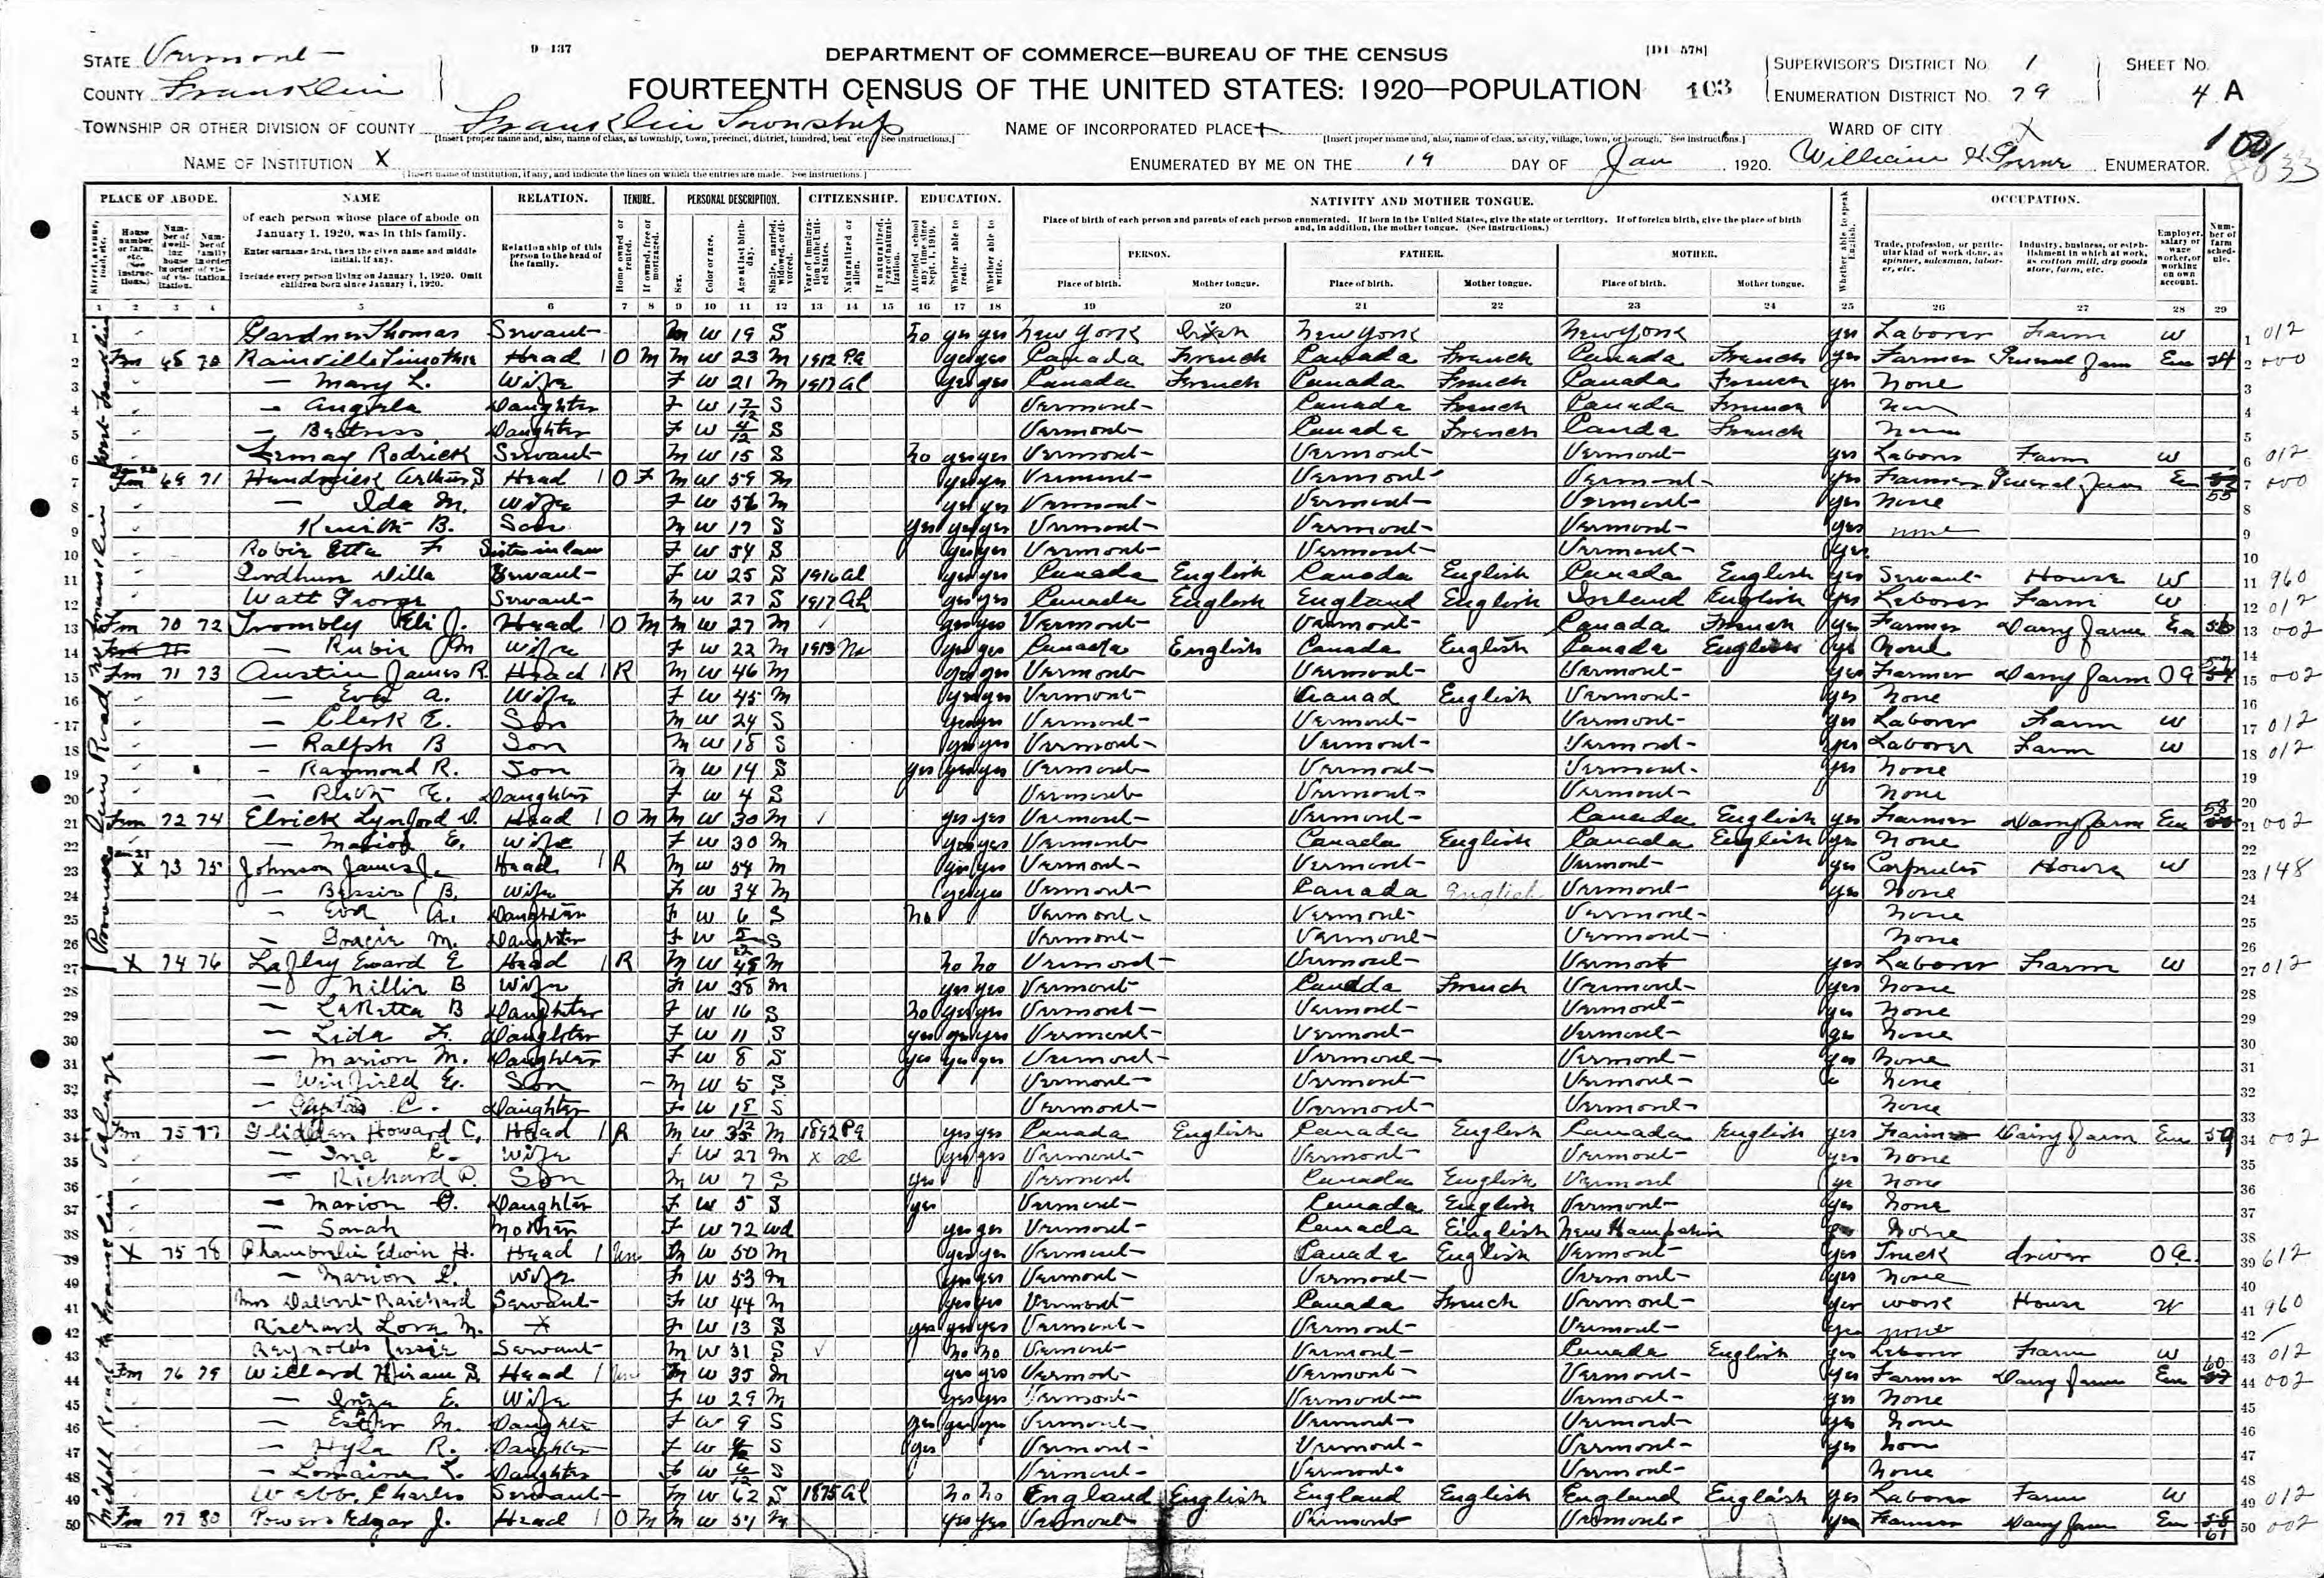 1920 US Census